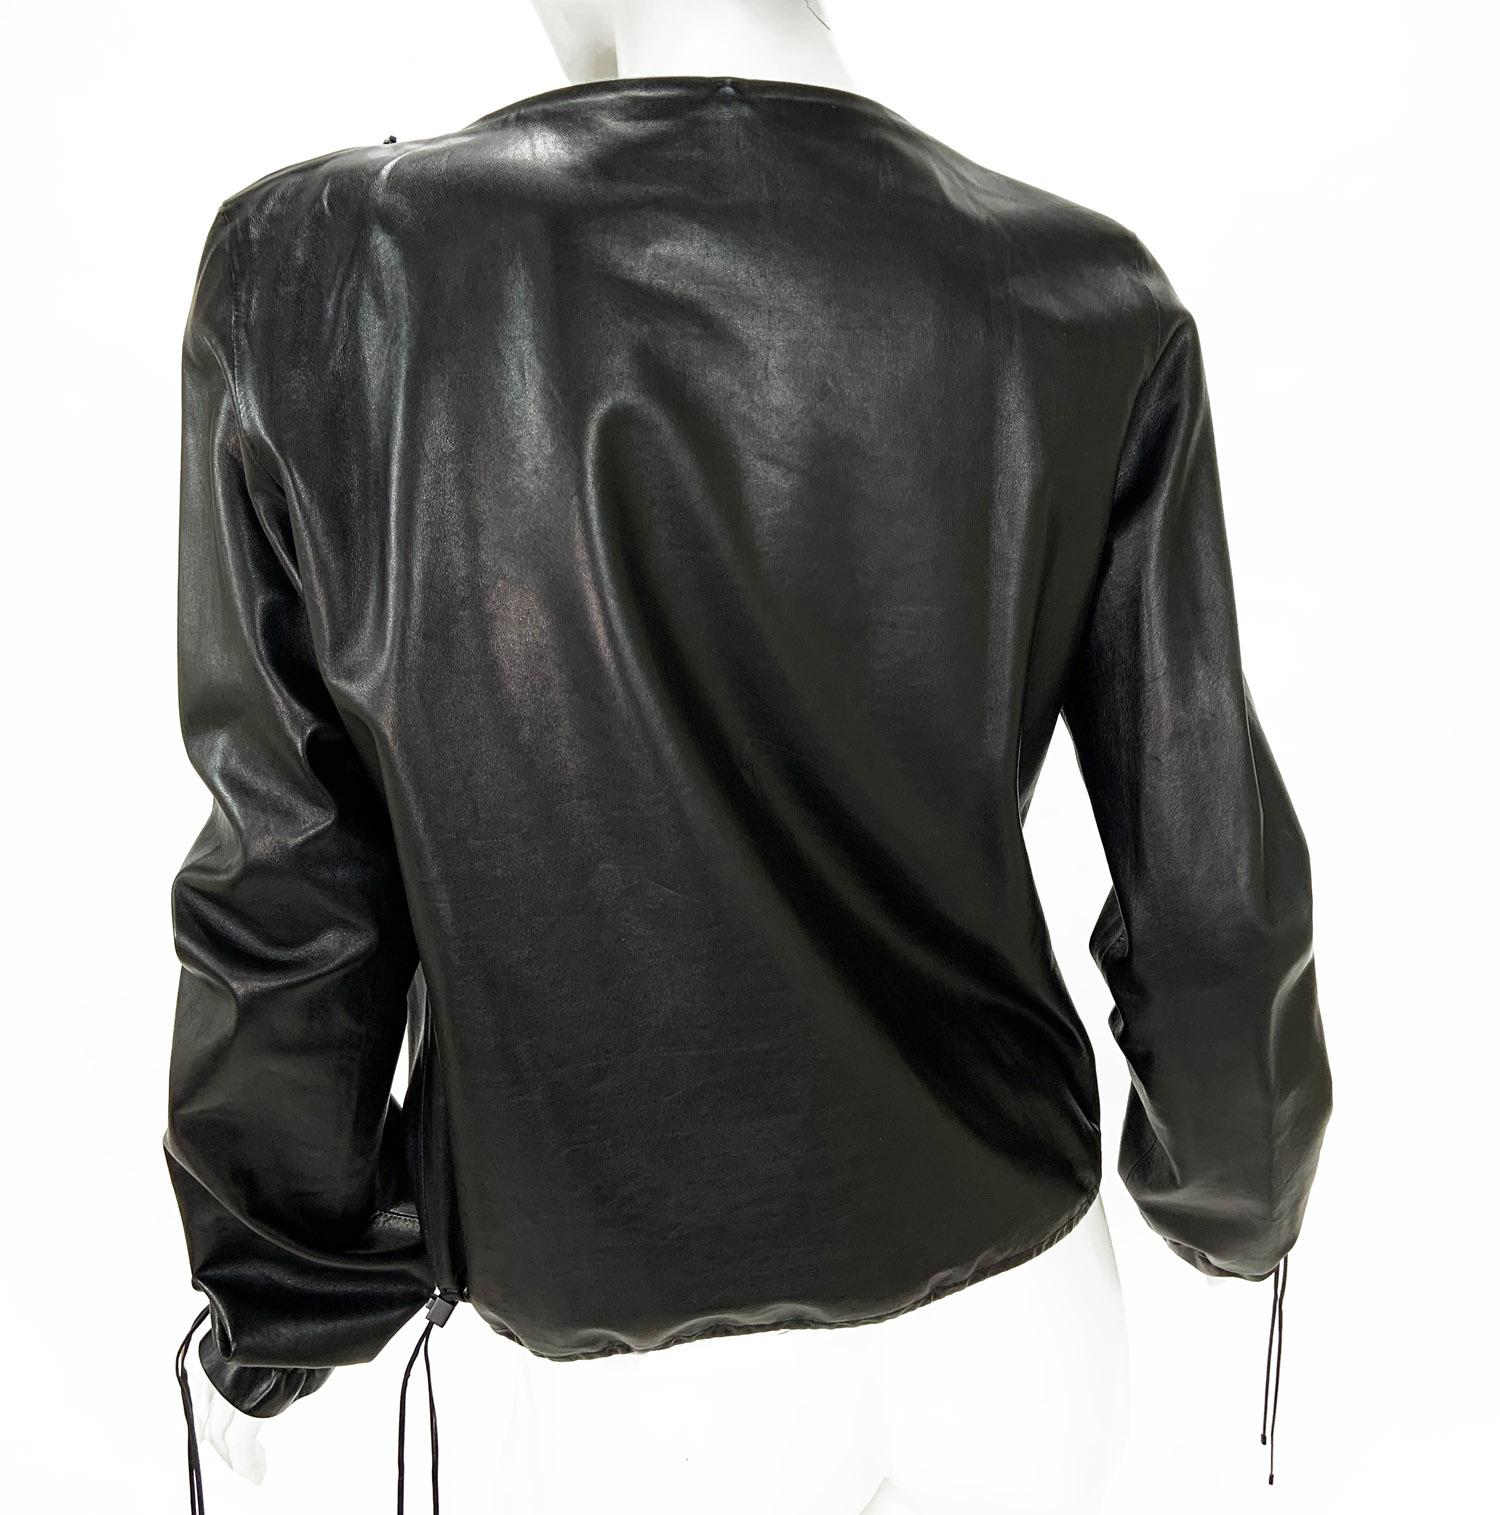 New Tom Ford for Gucci Black Leather Blouson Top Jacket
Taille italienne 44 - US 8/10 (veuillez vérifier les mesures).
Collection F/W 2001
100% cuir noir souple, Silhouette droite,  Cordon de serrage réglable au bas et sur les manches, deux poches